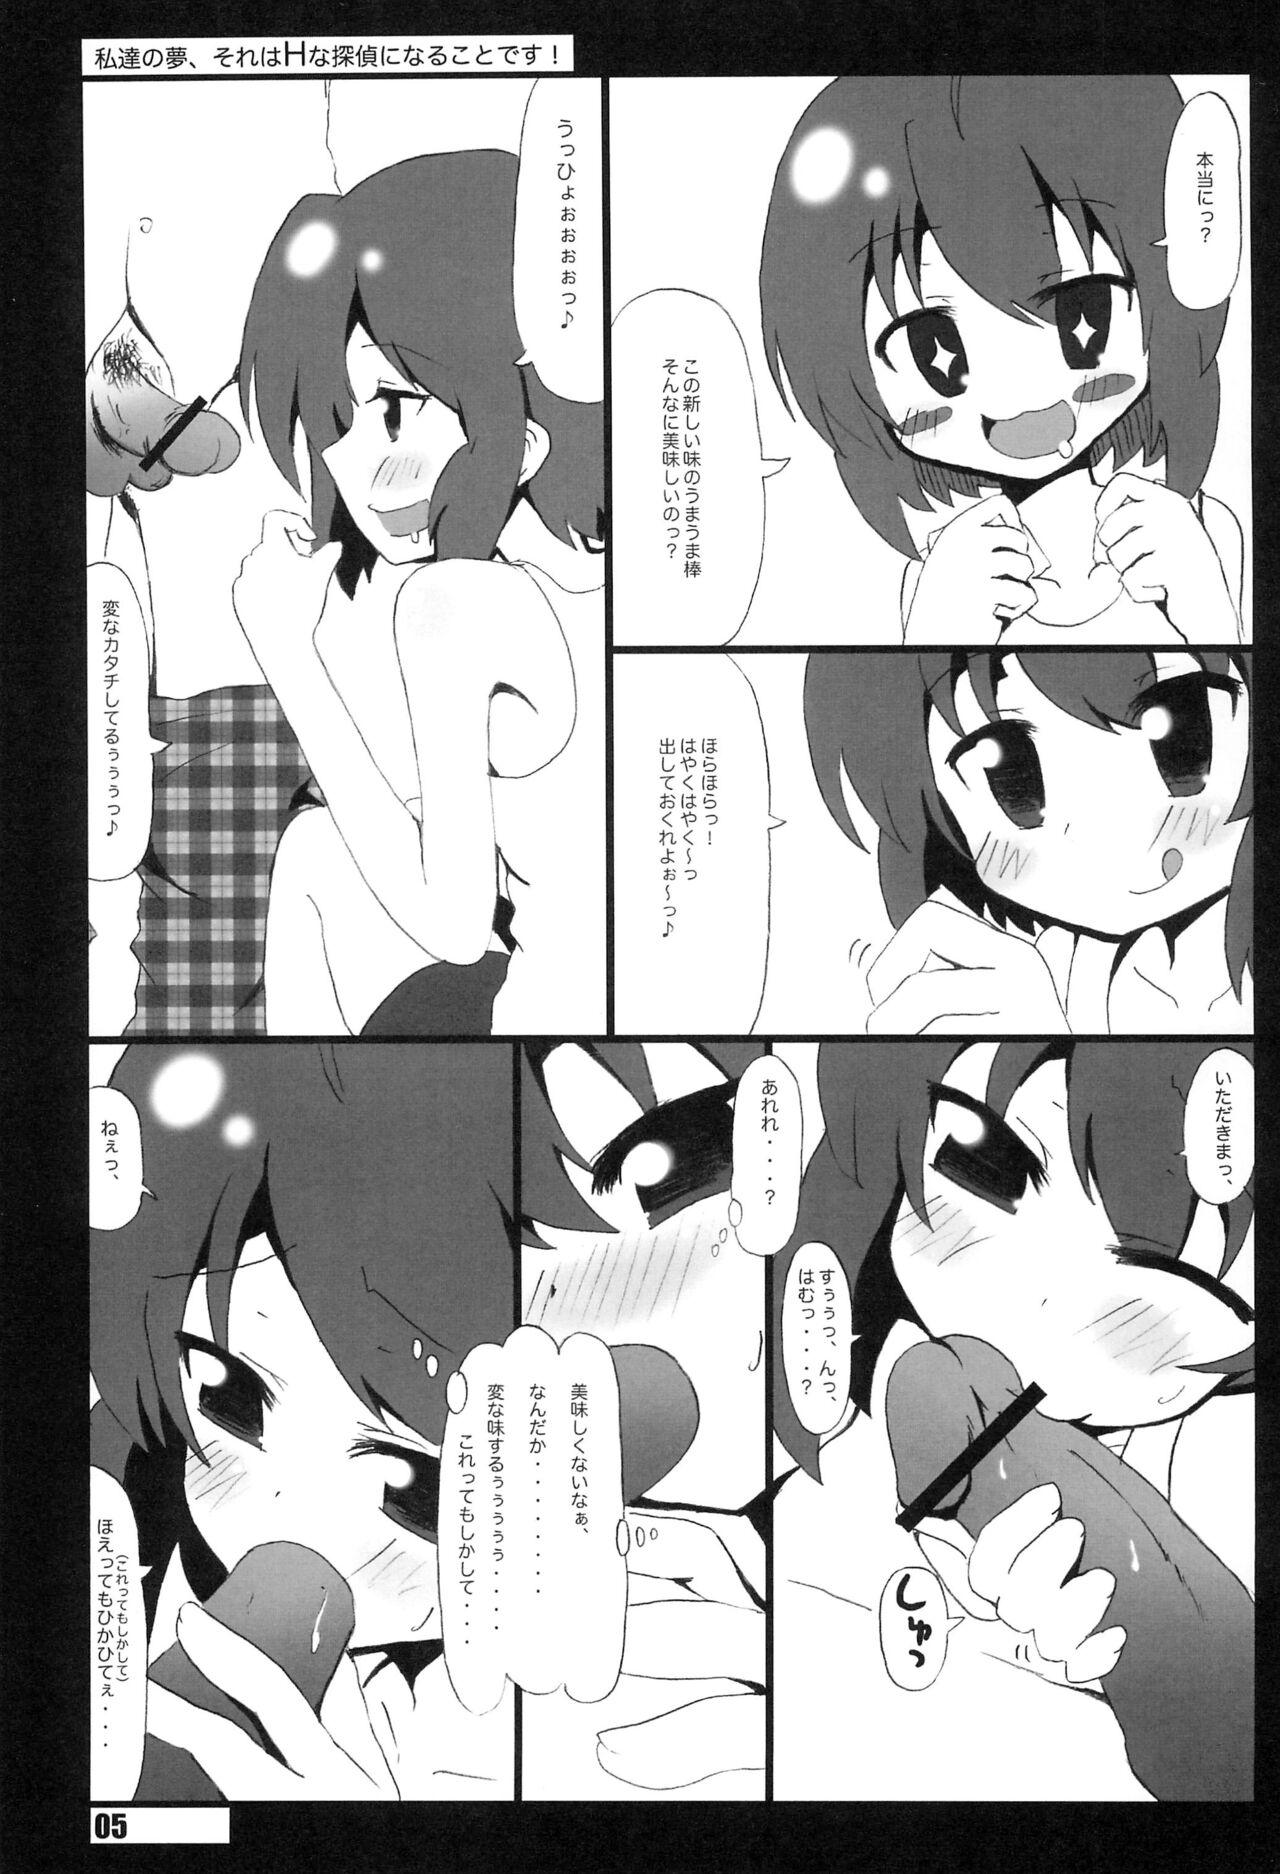 Bukkake Watashi-tachi no Yume, Sore wa H na Tantei ni naru koto desu. - Tantei opera milky holmes Eating Pussy - Page 5